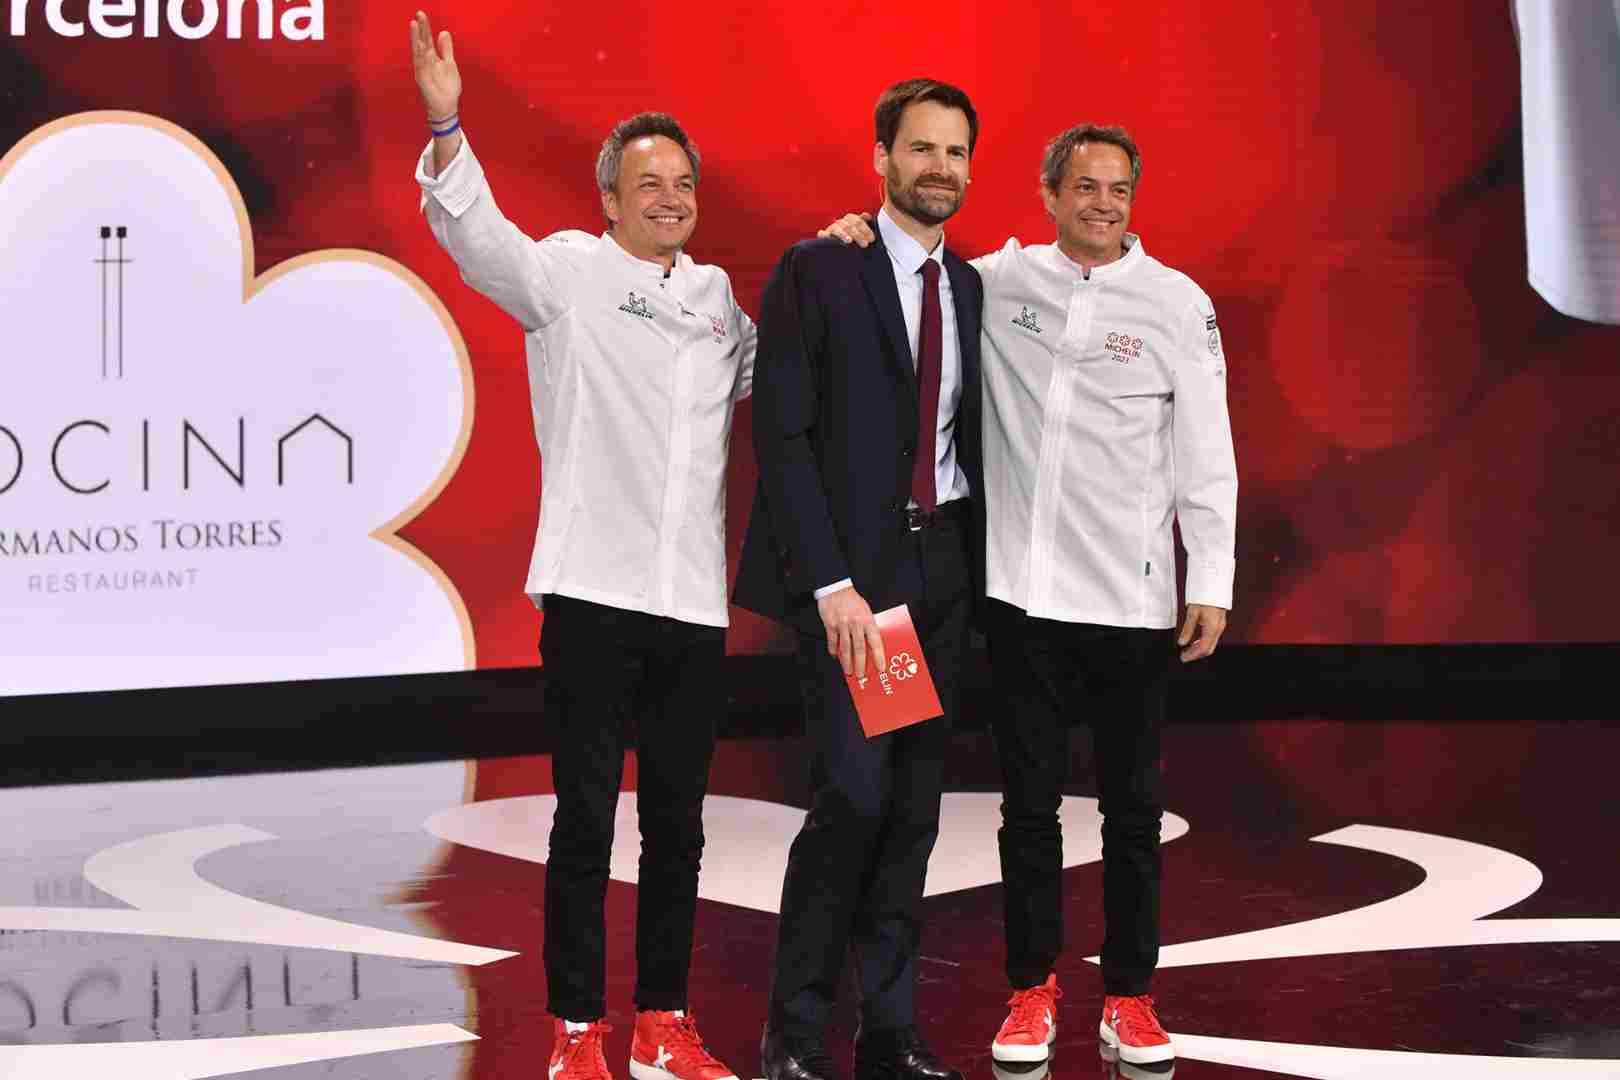 ¿Cómo se come en el Cocina Hermanos Torres, el nuevo tres estrellas Michelin?